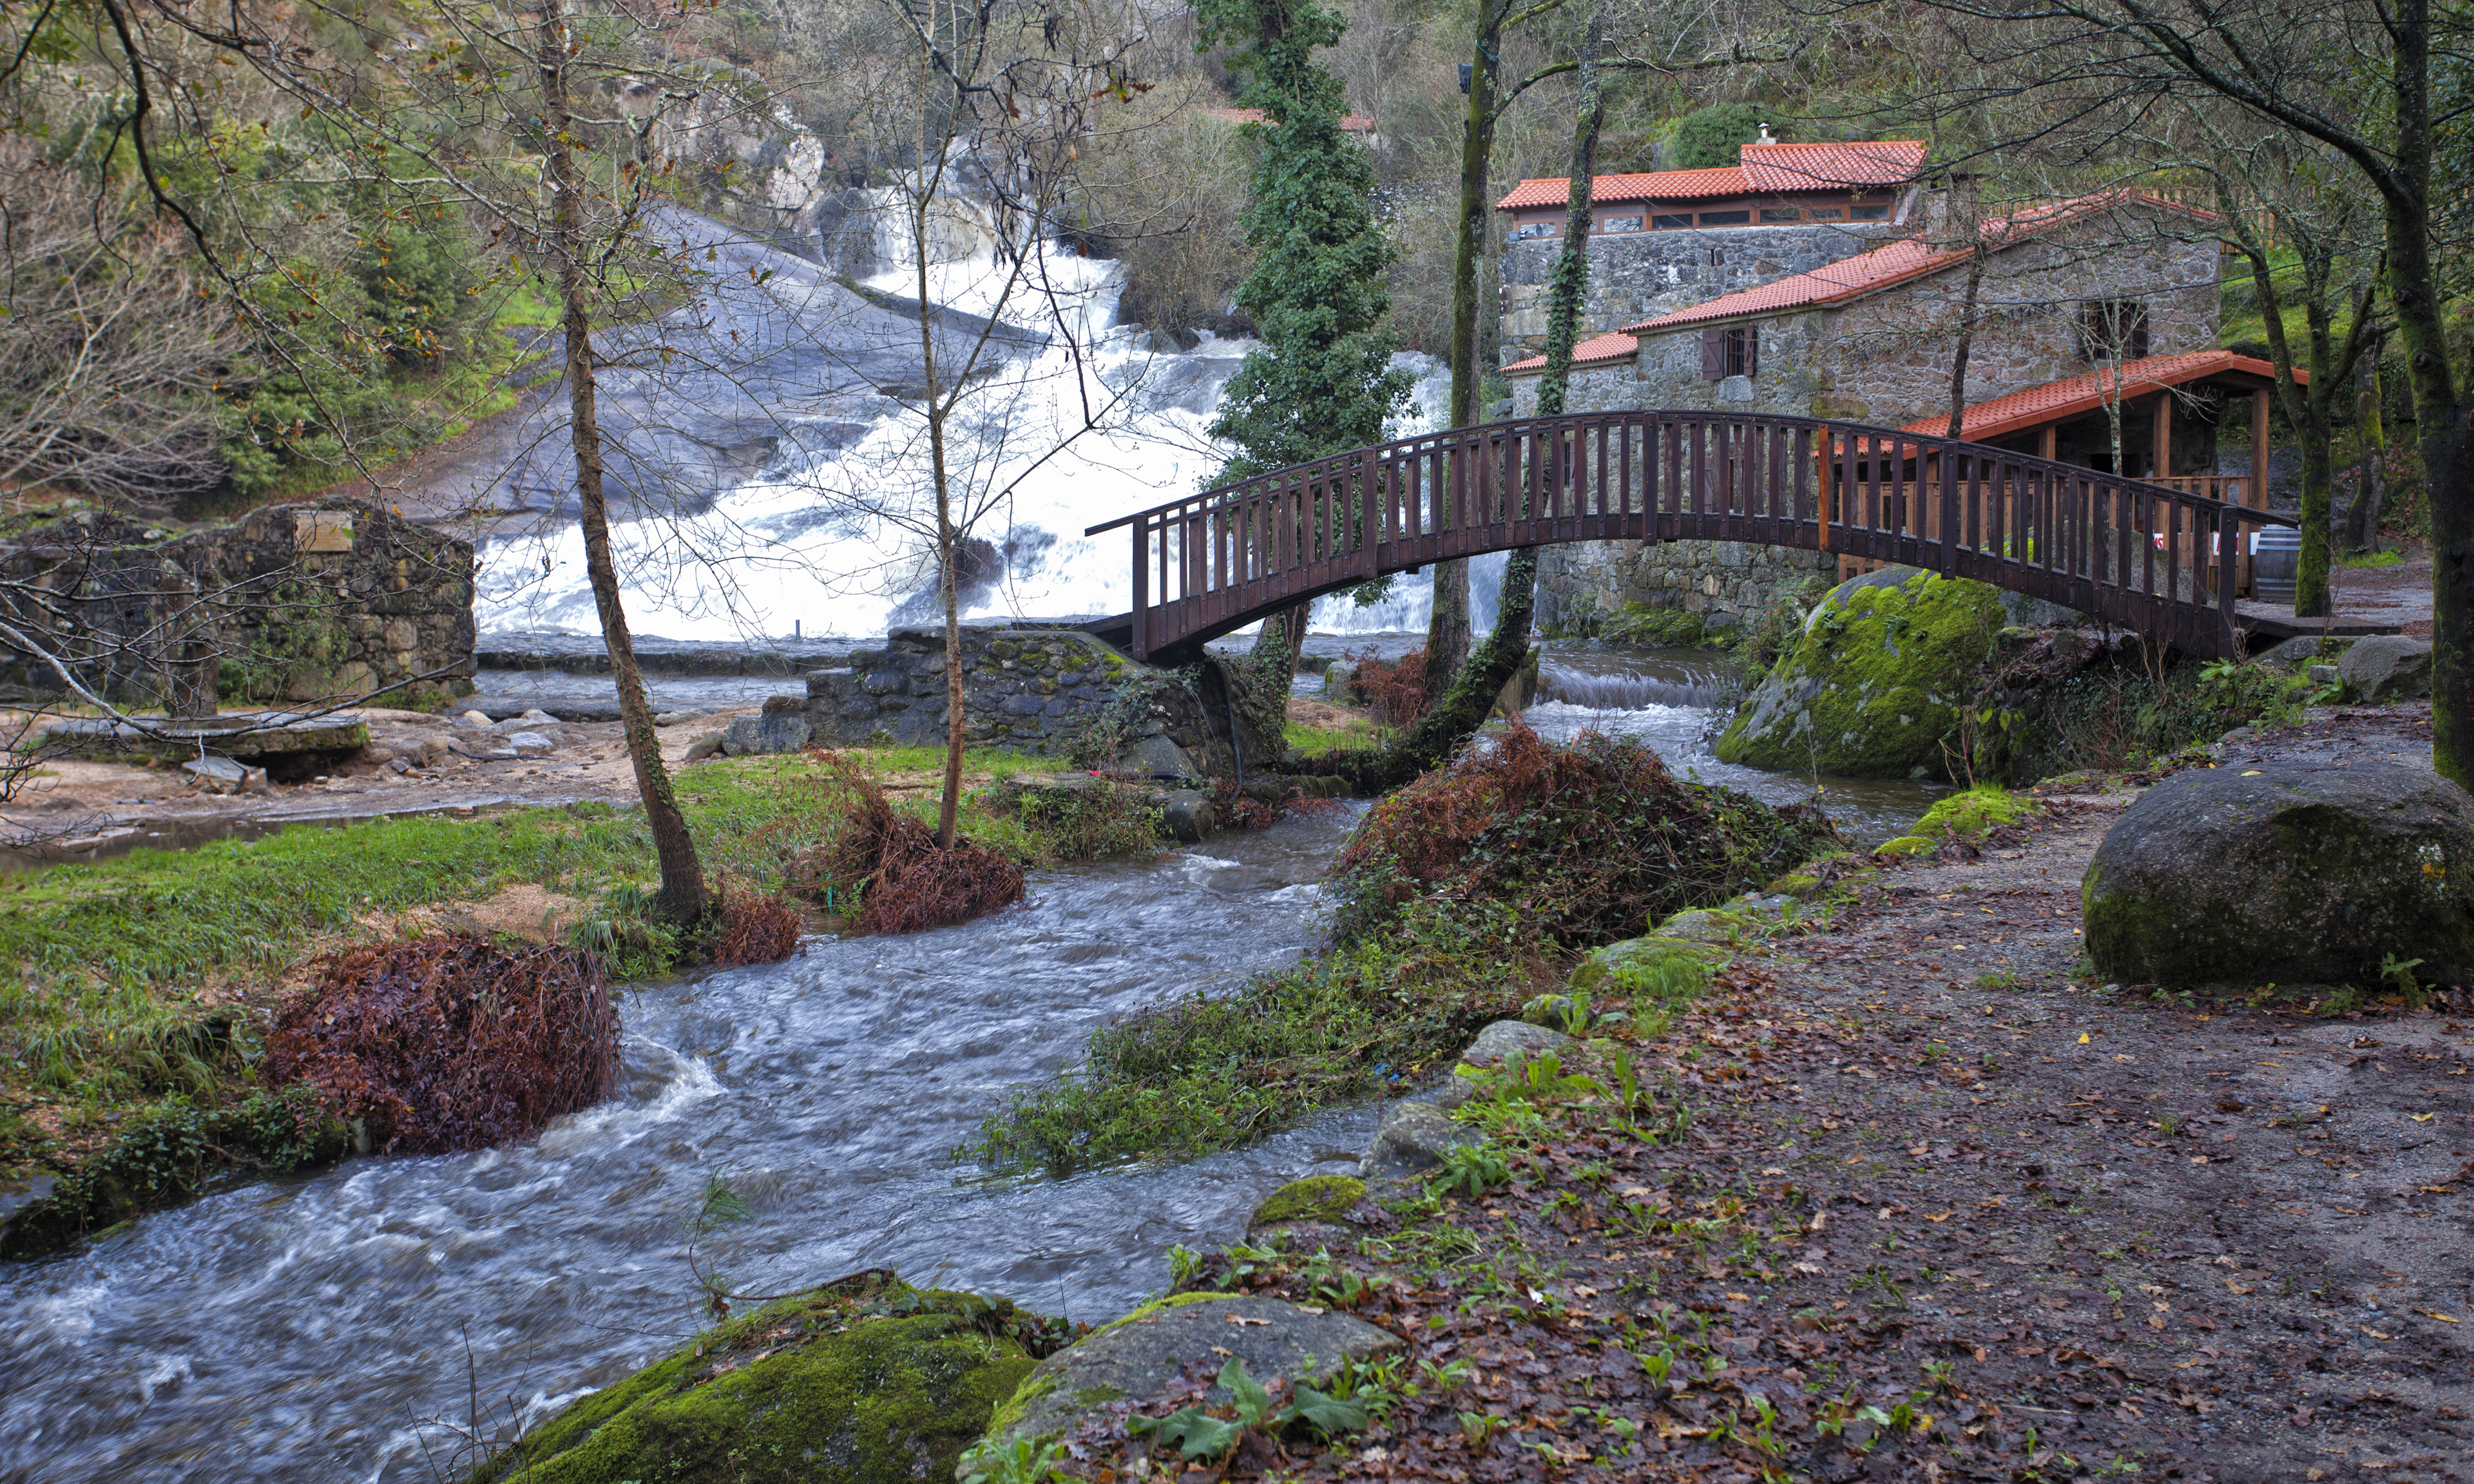 Turismo de Galicia y Afundación presentan «Galicia a un paso de ti», una invitación a redescubrir este paraíso